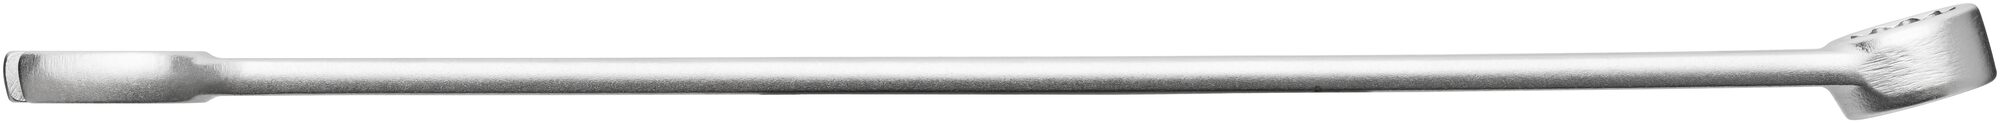 HAZET Ring-Maulschlüssel · extra lang · schlanke Bauform 600LG/10 · Außen Doppel-Sechskant-Tractionsprofil · 10–19 · Werkzeuge: 10